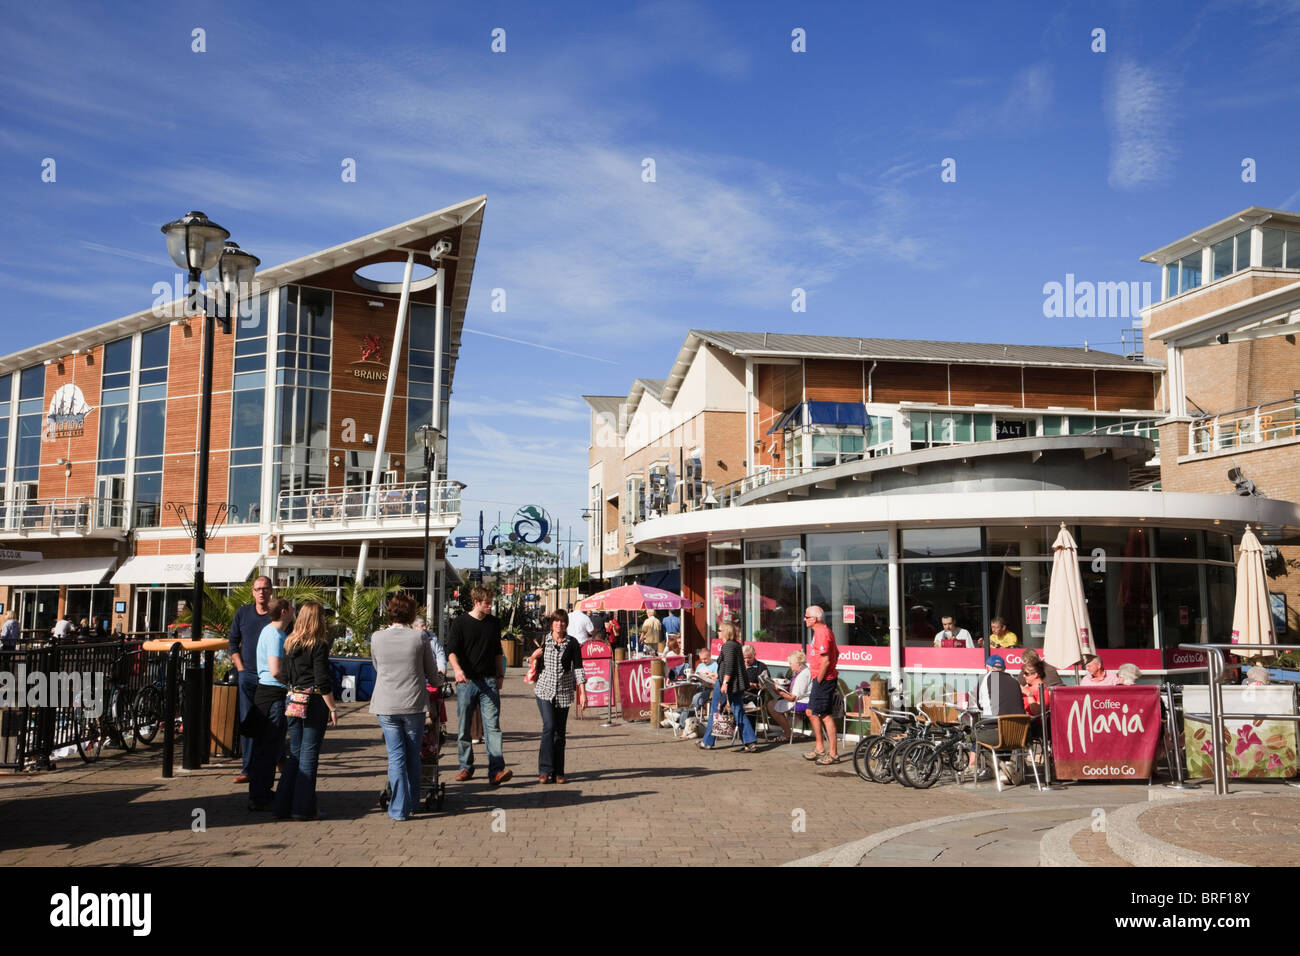 Mermaid Quay caffè e negozi affollati con la gente sul lungomare. Cardiff Bay (Bae Caerdydd), Glamorgan, Galles del Sud, Regno Unito, Gran Bretagna Foto Stock